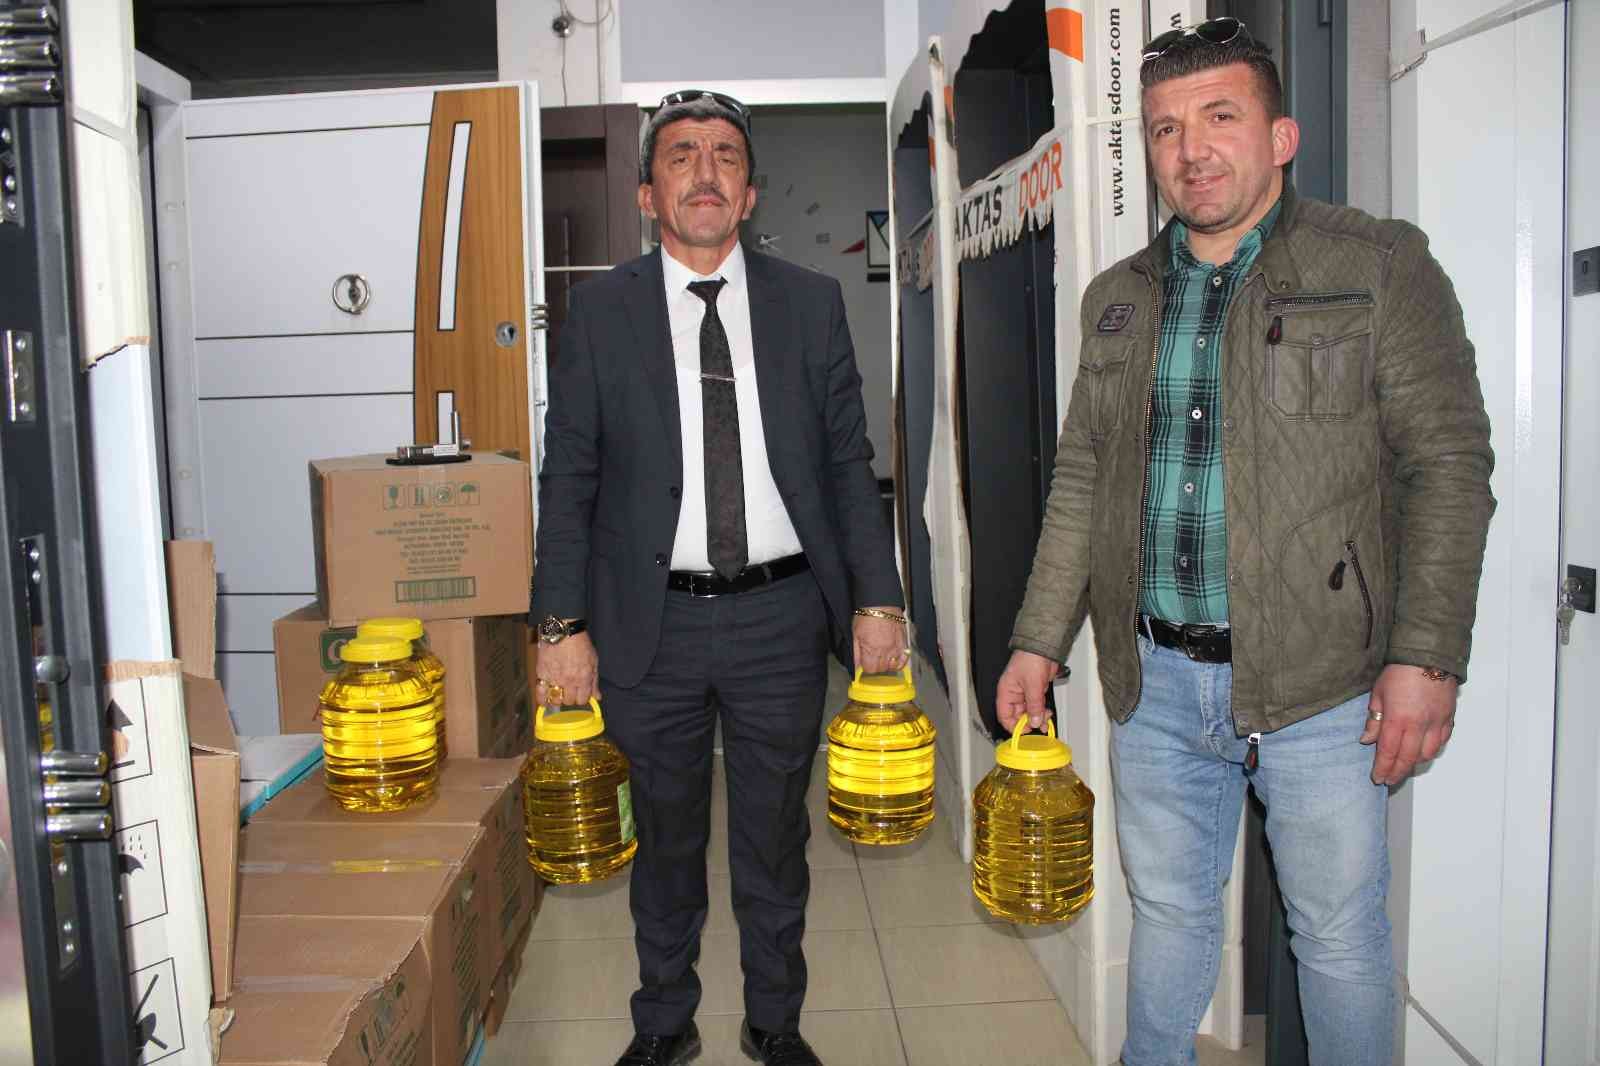 Stokçulara kızdı, kampanya başlattı: Çelik kapı alana 5 litrelik yağ hediye ediyor #ordu